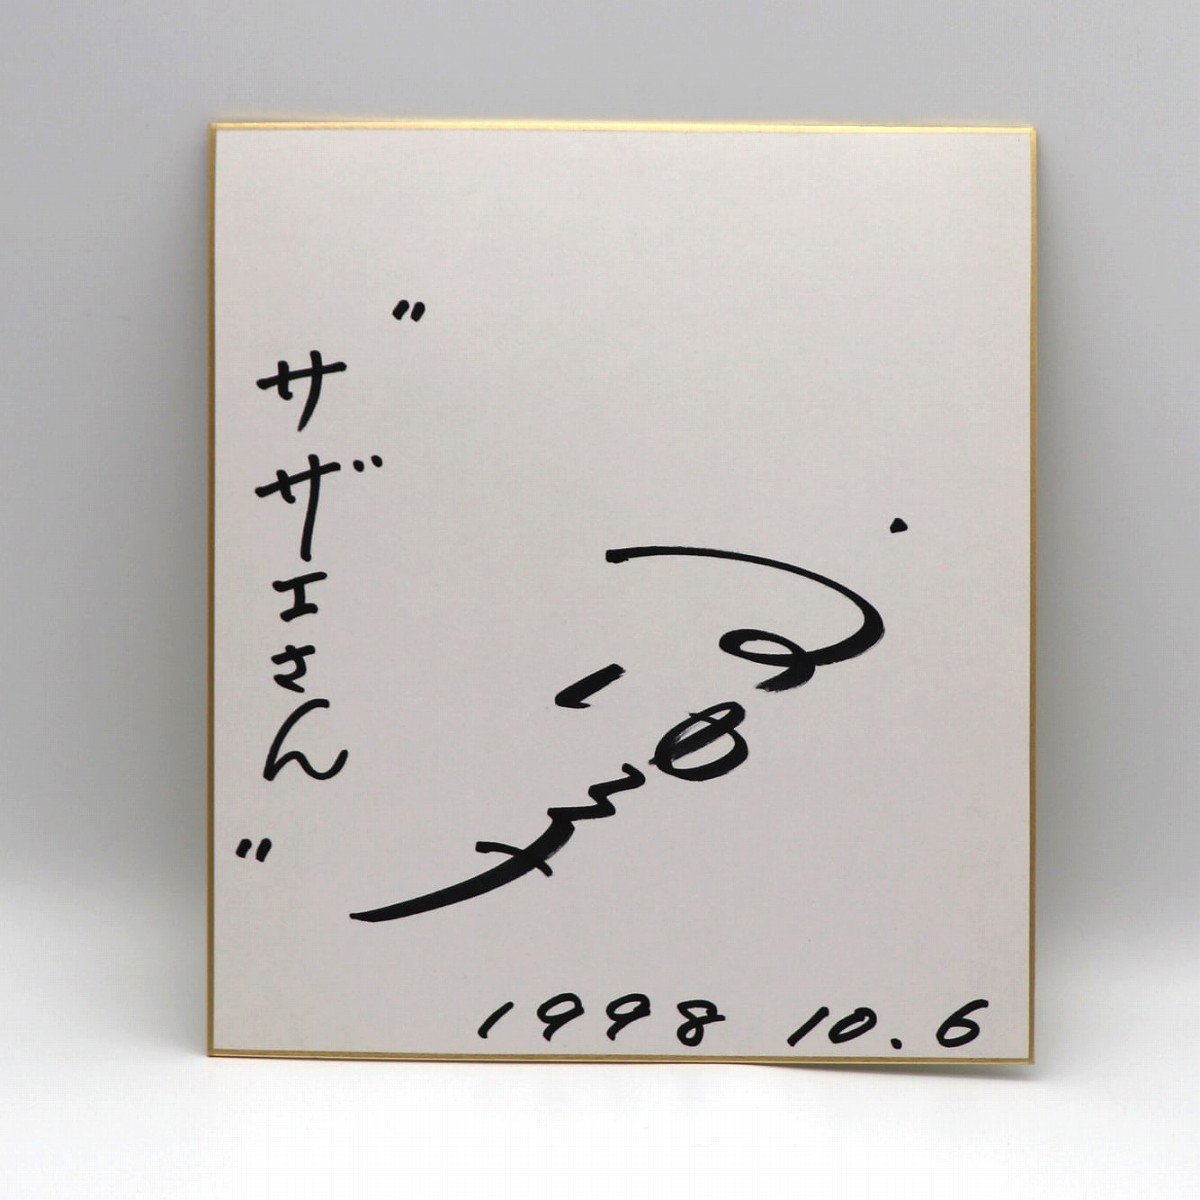 宇野优子, 签名彩色纸, 手写, Sazae-san主题曲, 编号200902-037, 包装尺寸 60, 明星周边, 符号